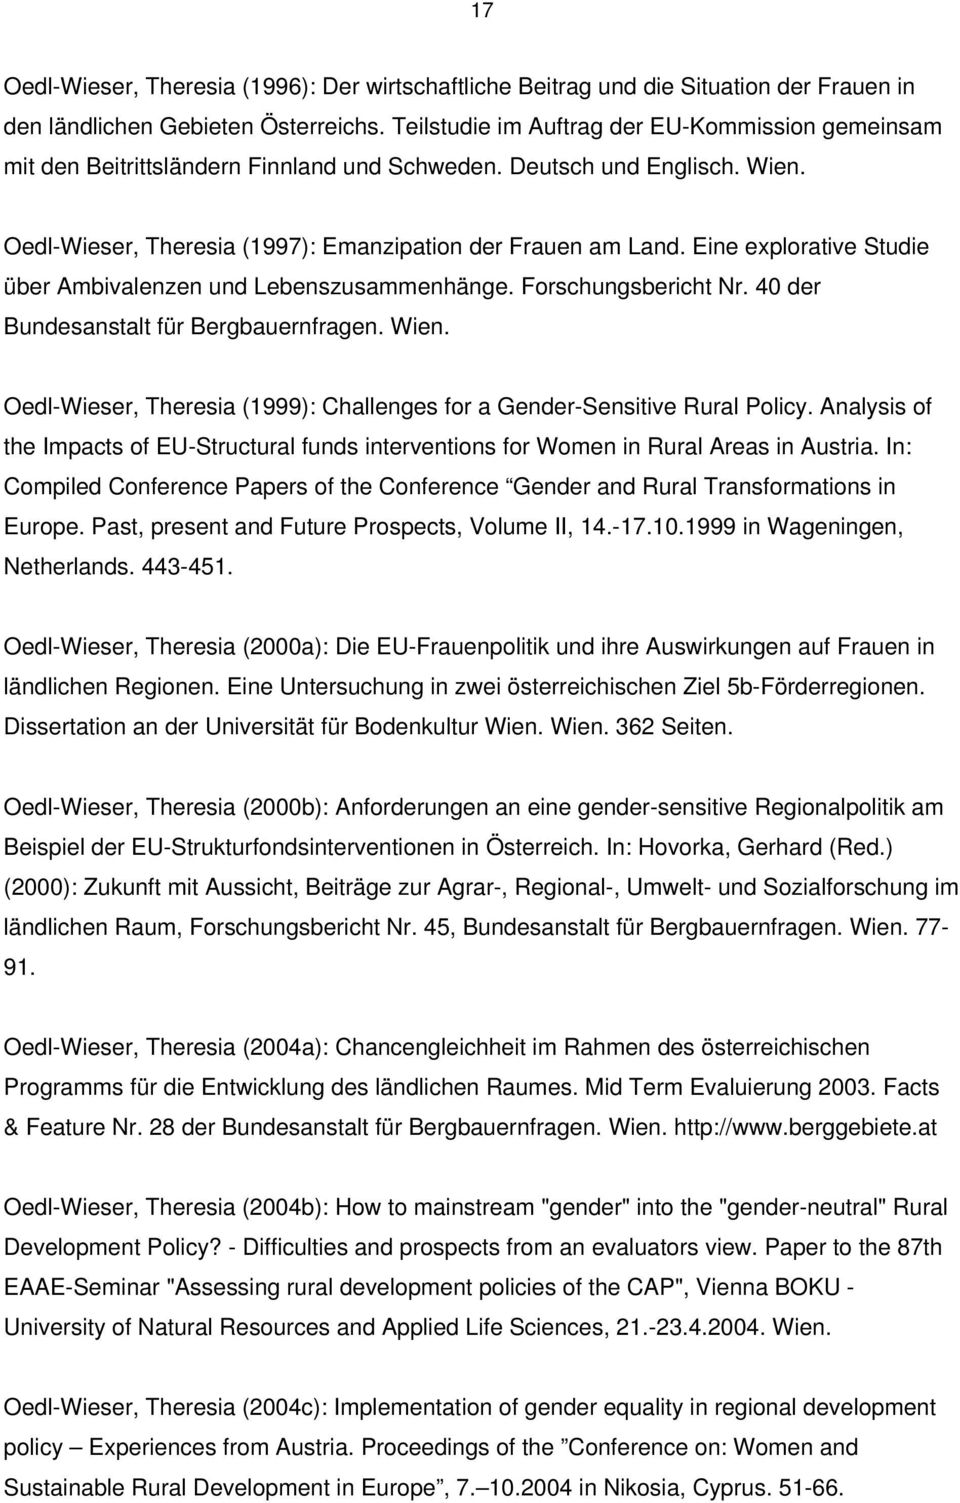 Eine explorative Studie über Ambivalenzen und Lebenszusammenhänge. Forschungsbericht Nr. 40 der Bundesanstalt für Bergbauernfragen. Wien.